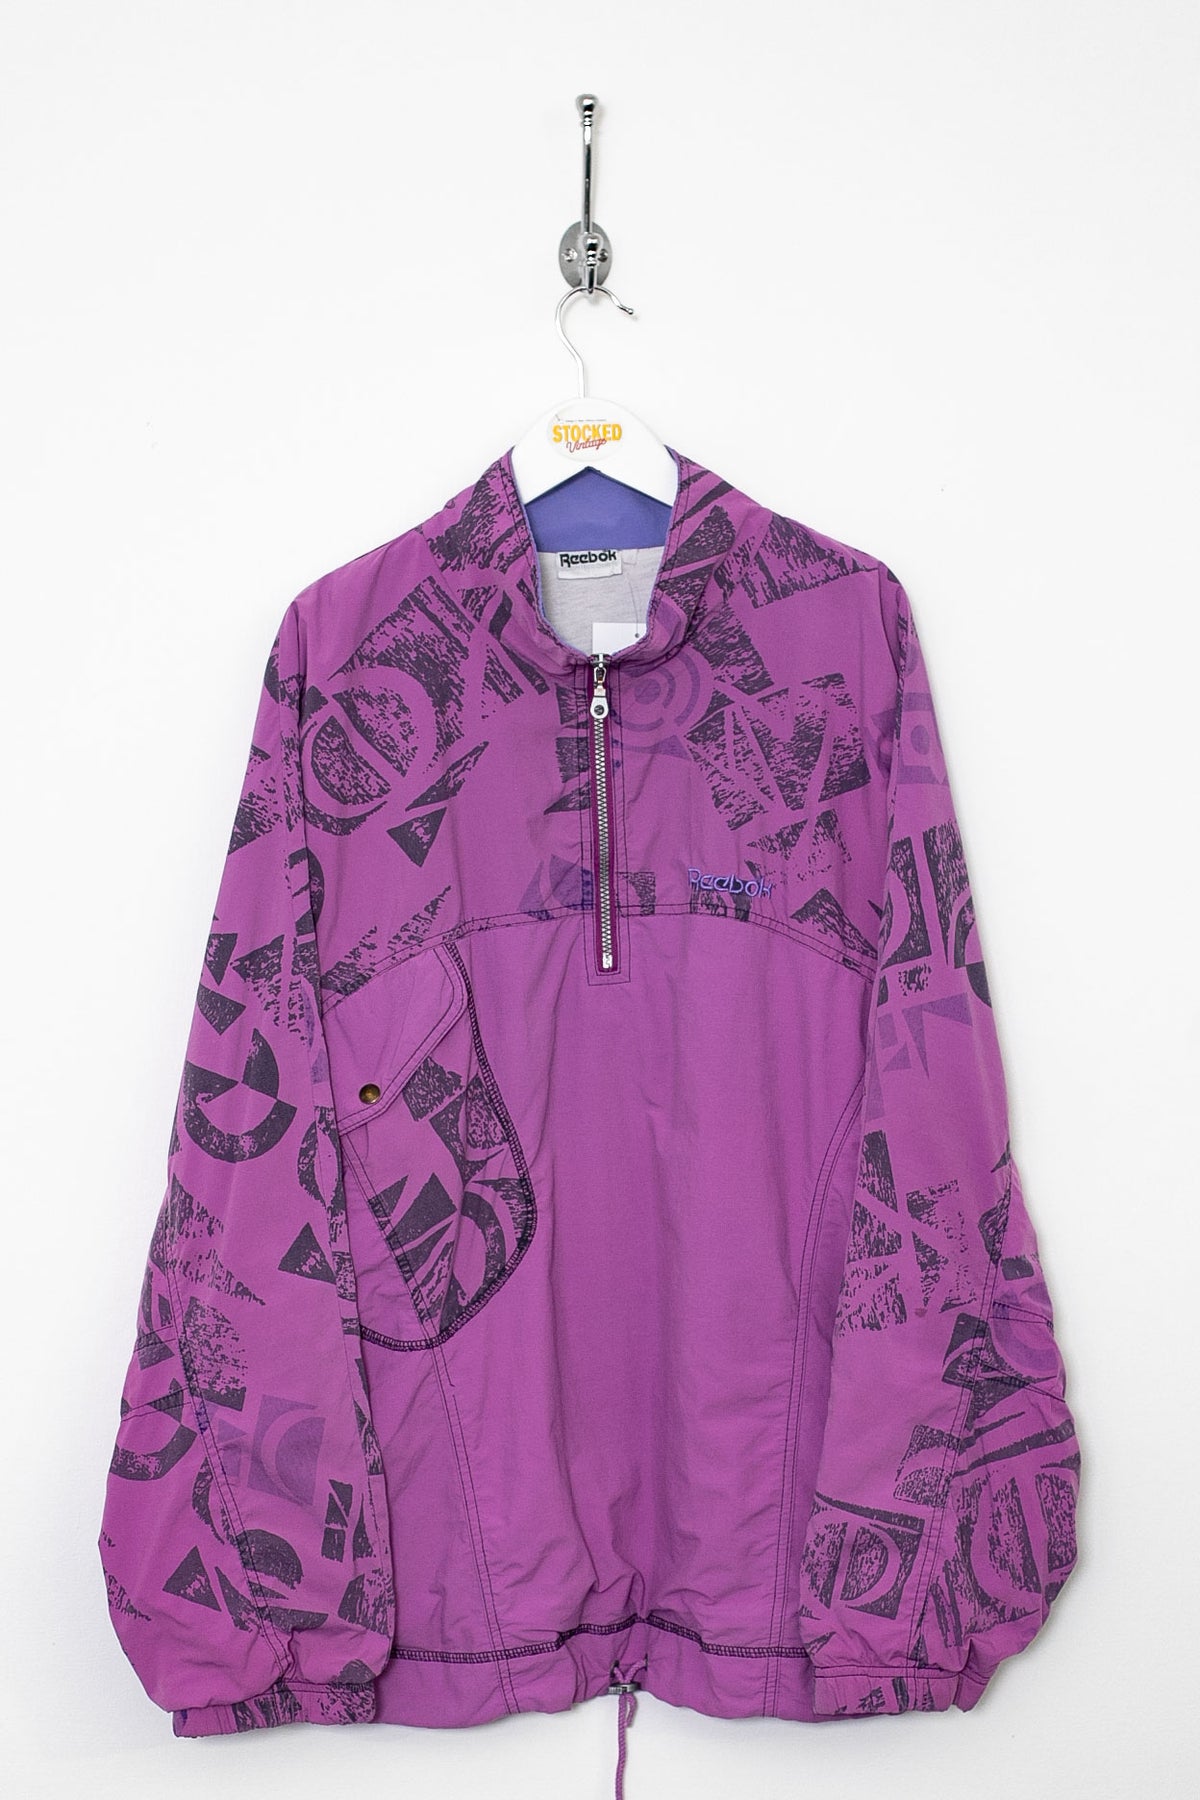 90s Reebok 1/4 Zip Jacket (XL)